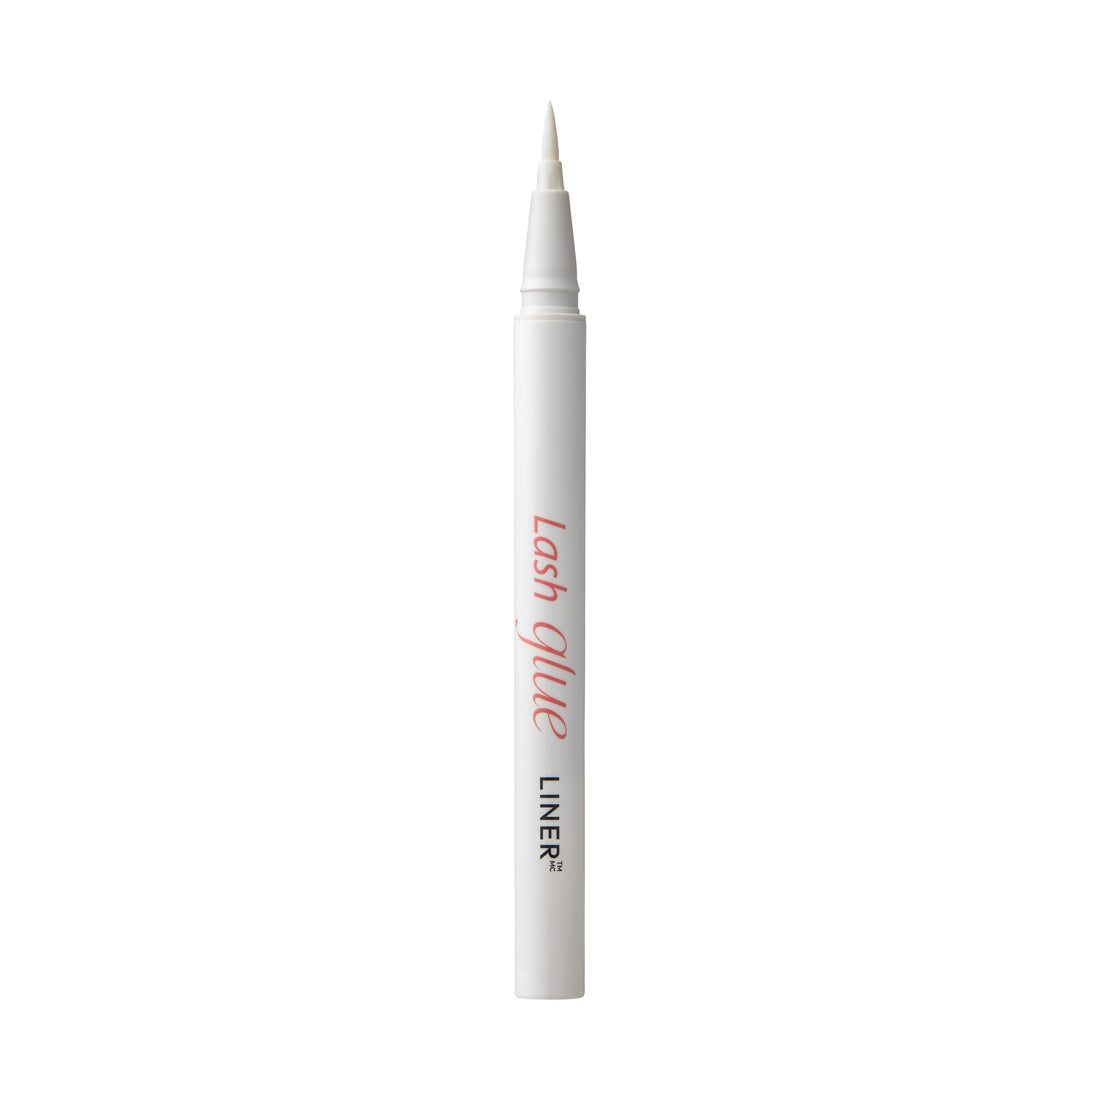 KISS Lash GLUEliner Matte Finish False Eyelash Glue, 0.7 mL (0.02 fl. oz.), Bezfarebná